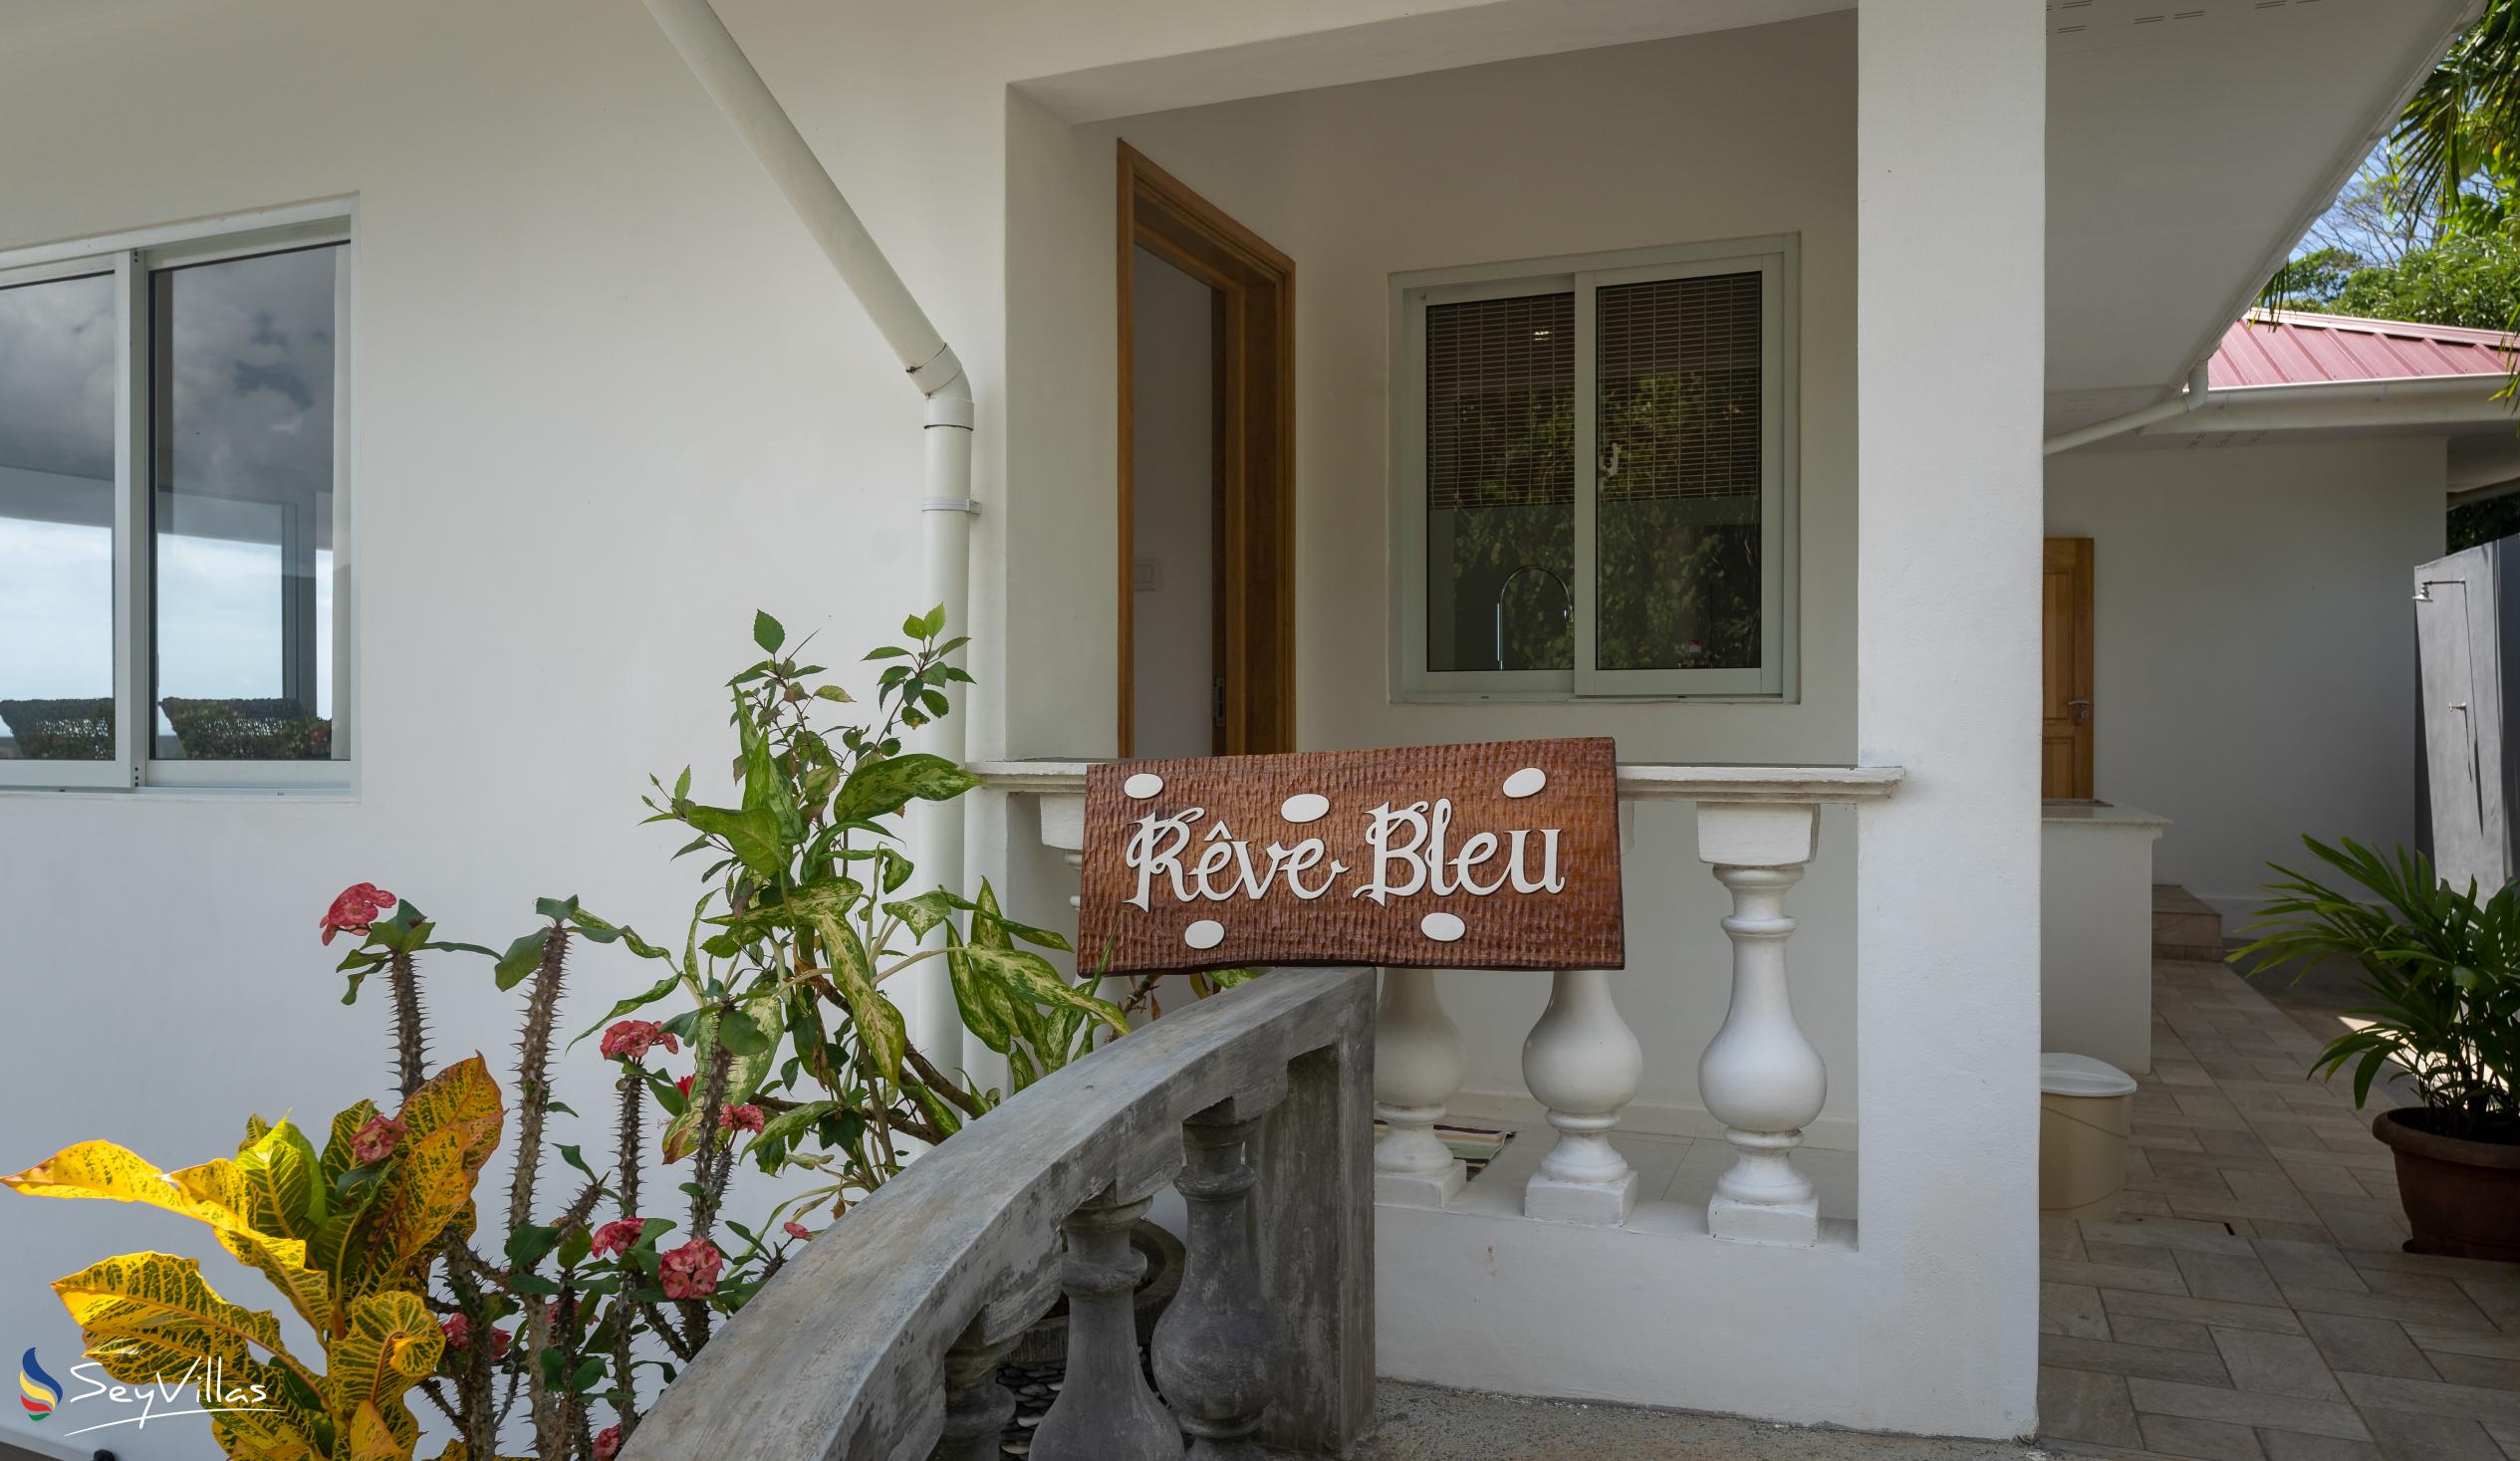 Foto 9: Reve Bleu - Extérieur - Mahé (Seychelles)